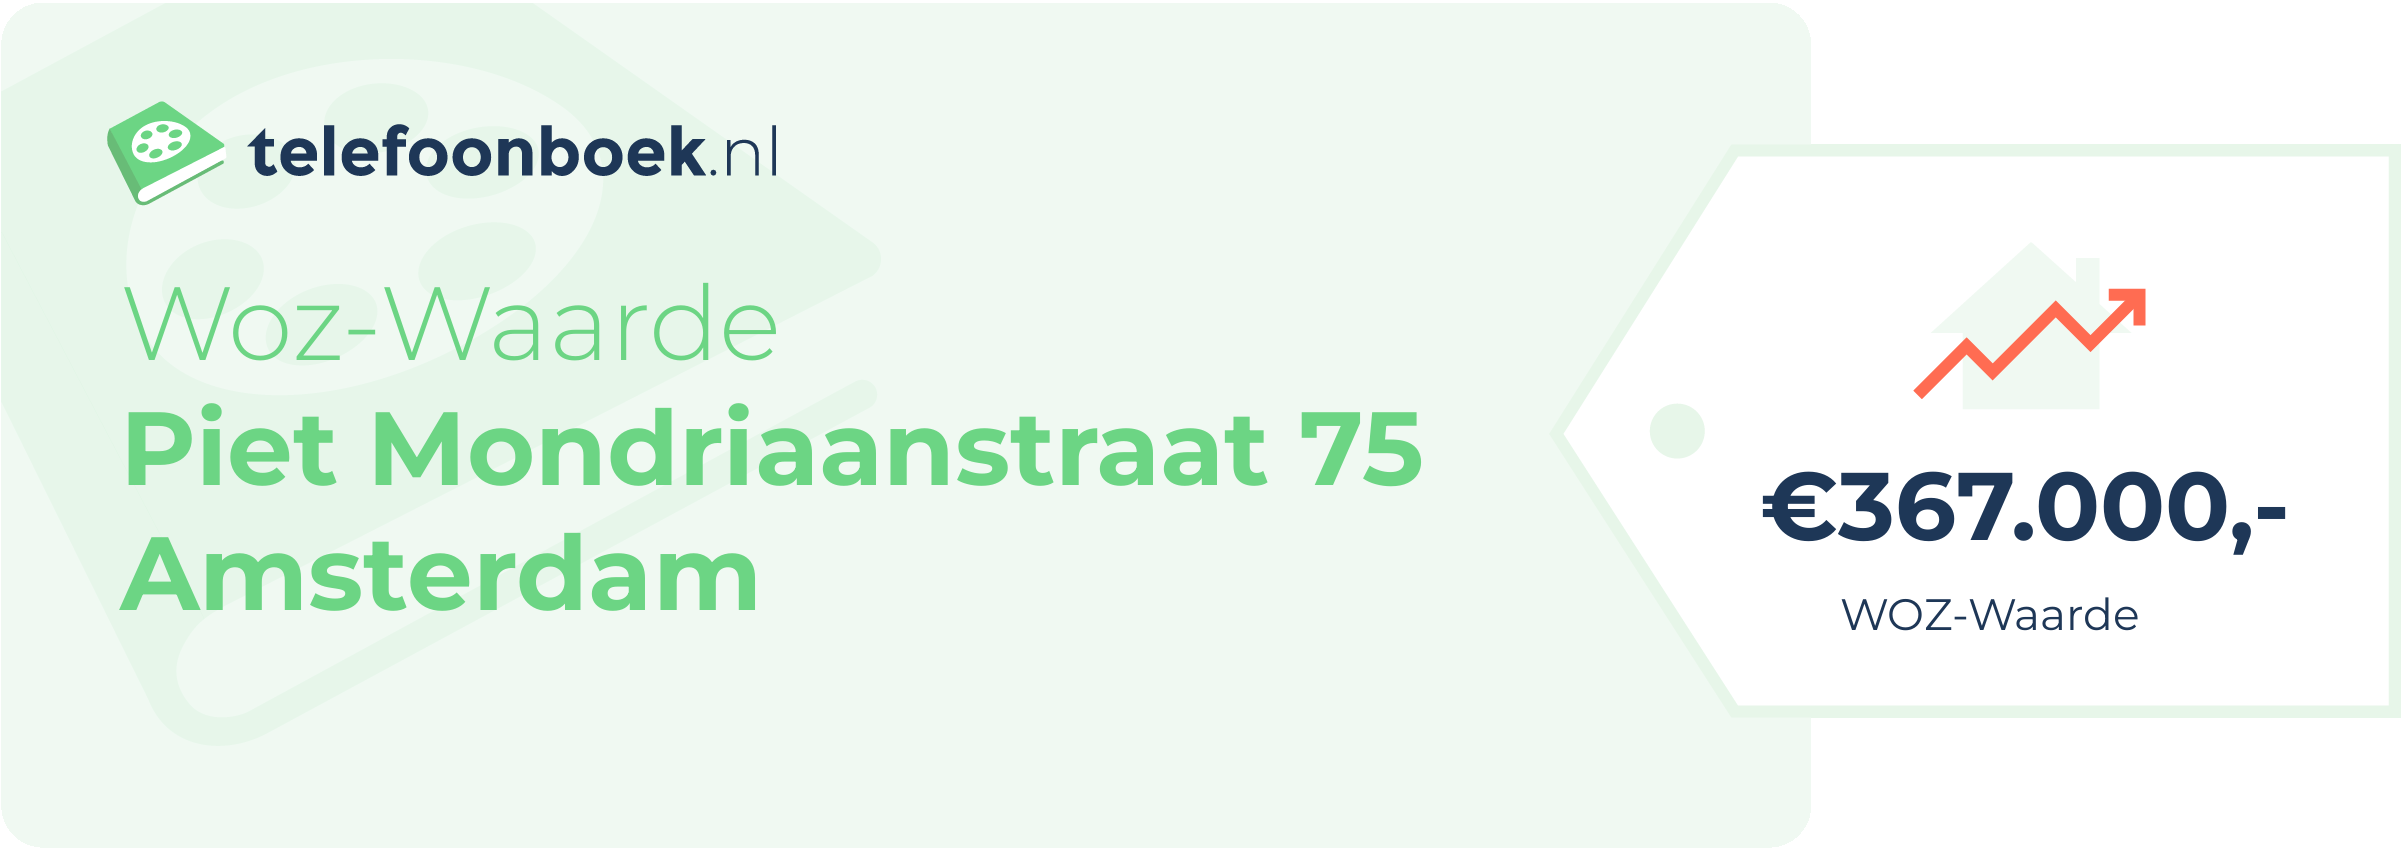 WOZ-waarde Piet Mondriaanstraat 75 Amsterdam